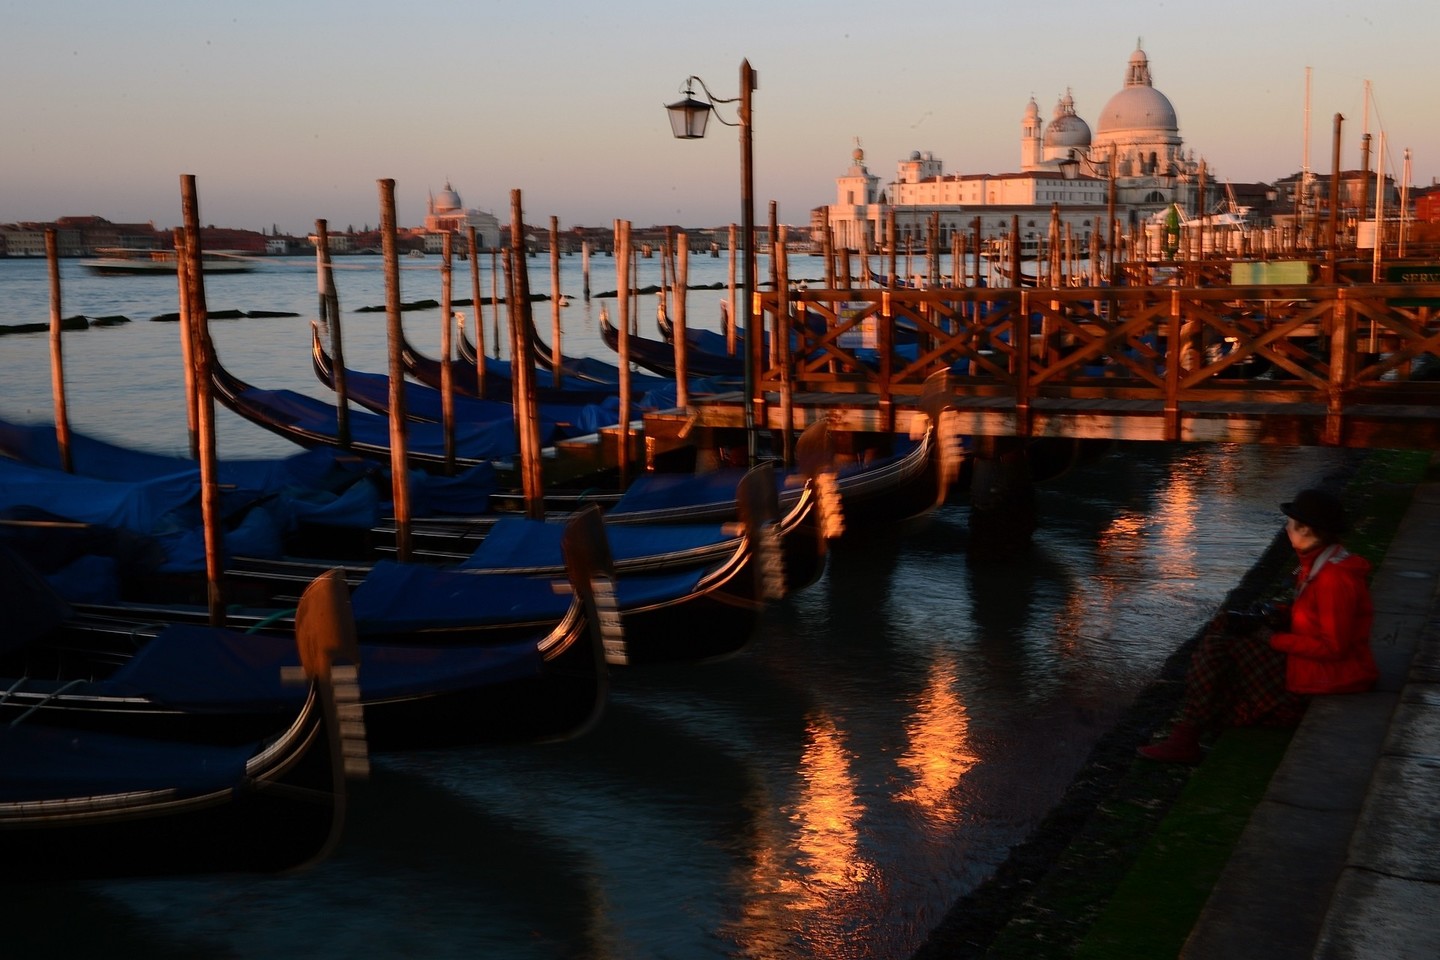 Romantiškoji Venecija Meno bienalės metu gerokai pasikeičia.<br>AFP/Scanpix nuotr.